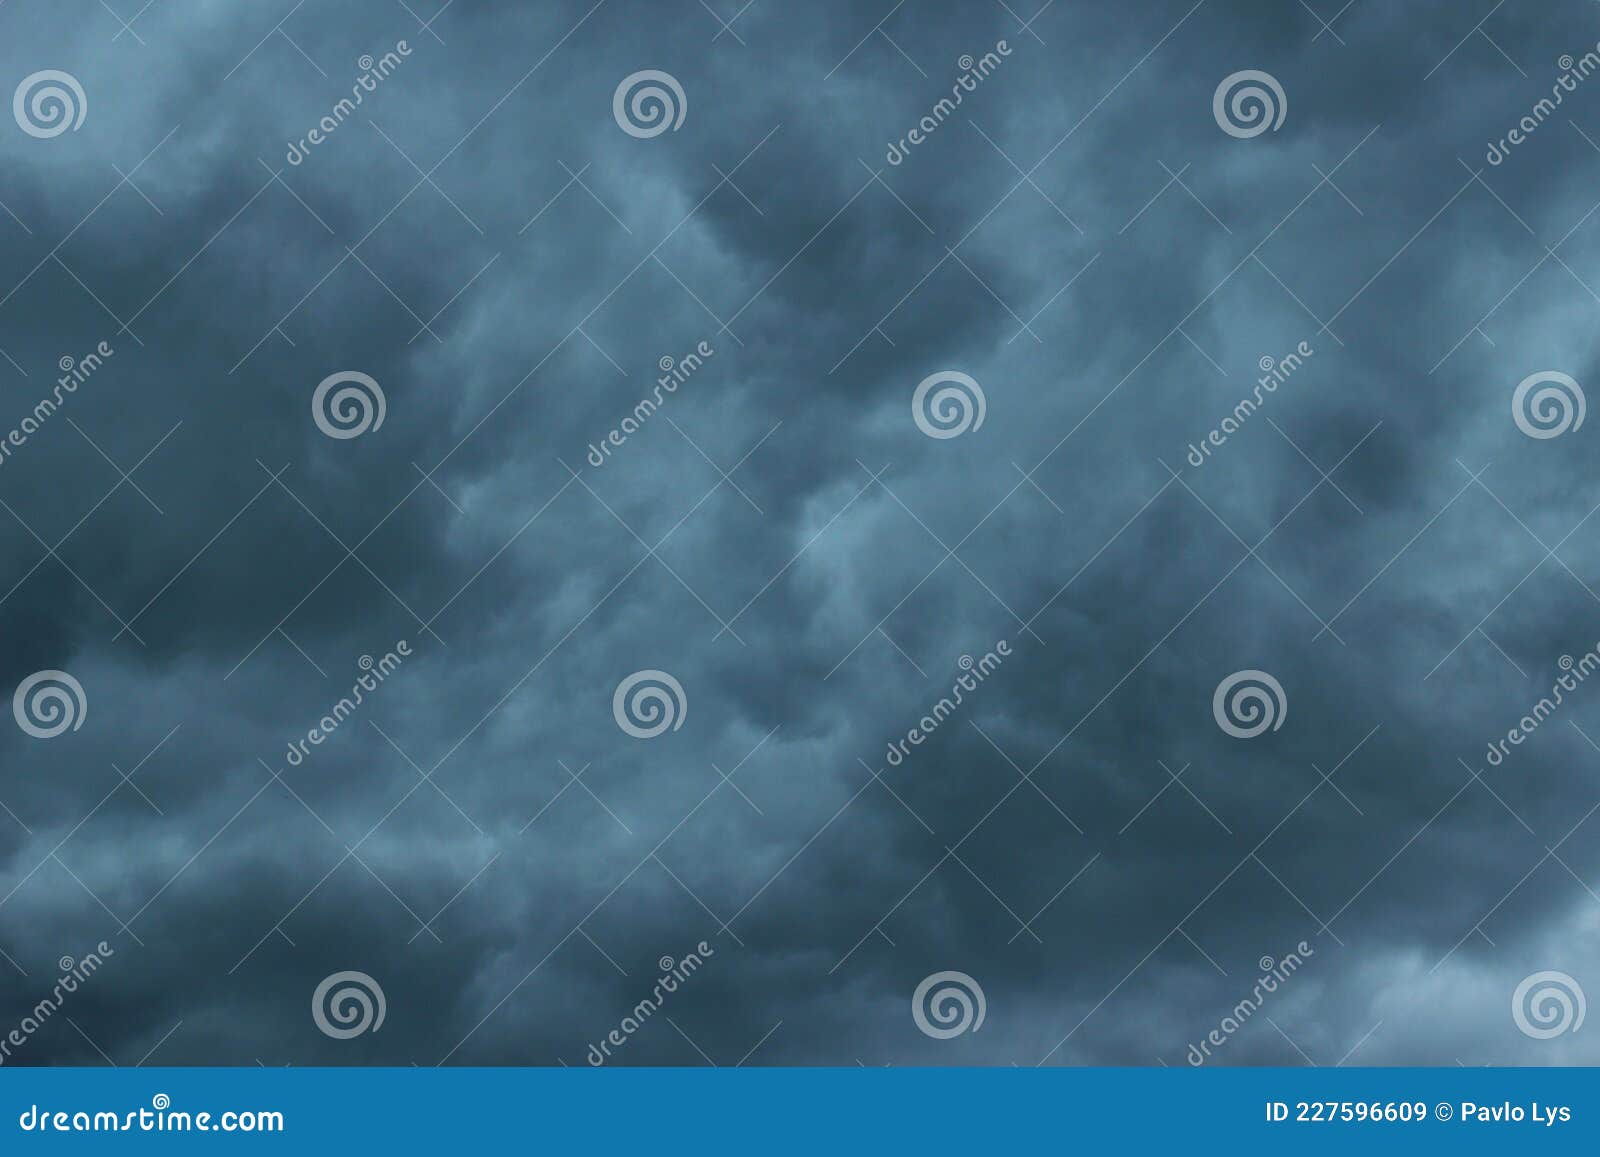 รูปภาพ : ดำและขาว, ท้องฟ้า, บรรยากาศ, ตอนกลางวัน, สภาพอากาศ, Cumulus, เทา, พายุฝนฟ้าคะนอง, มืดมน ...